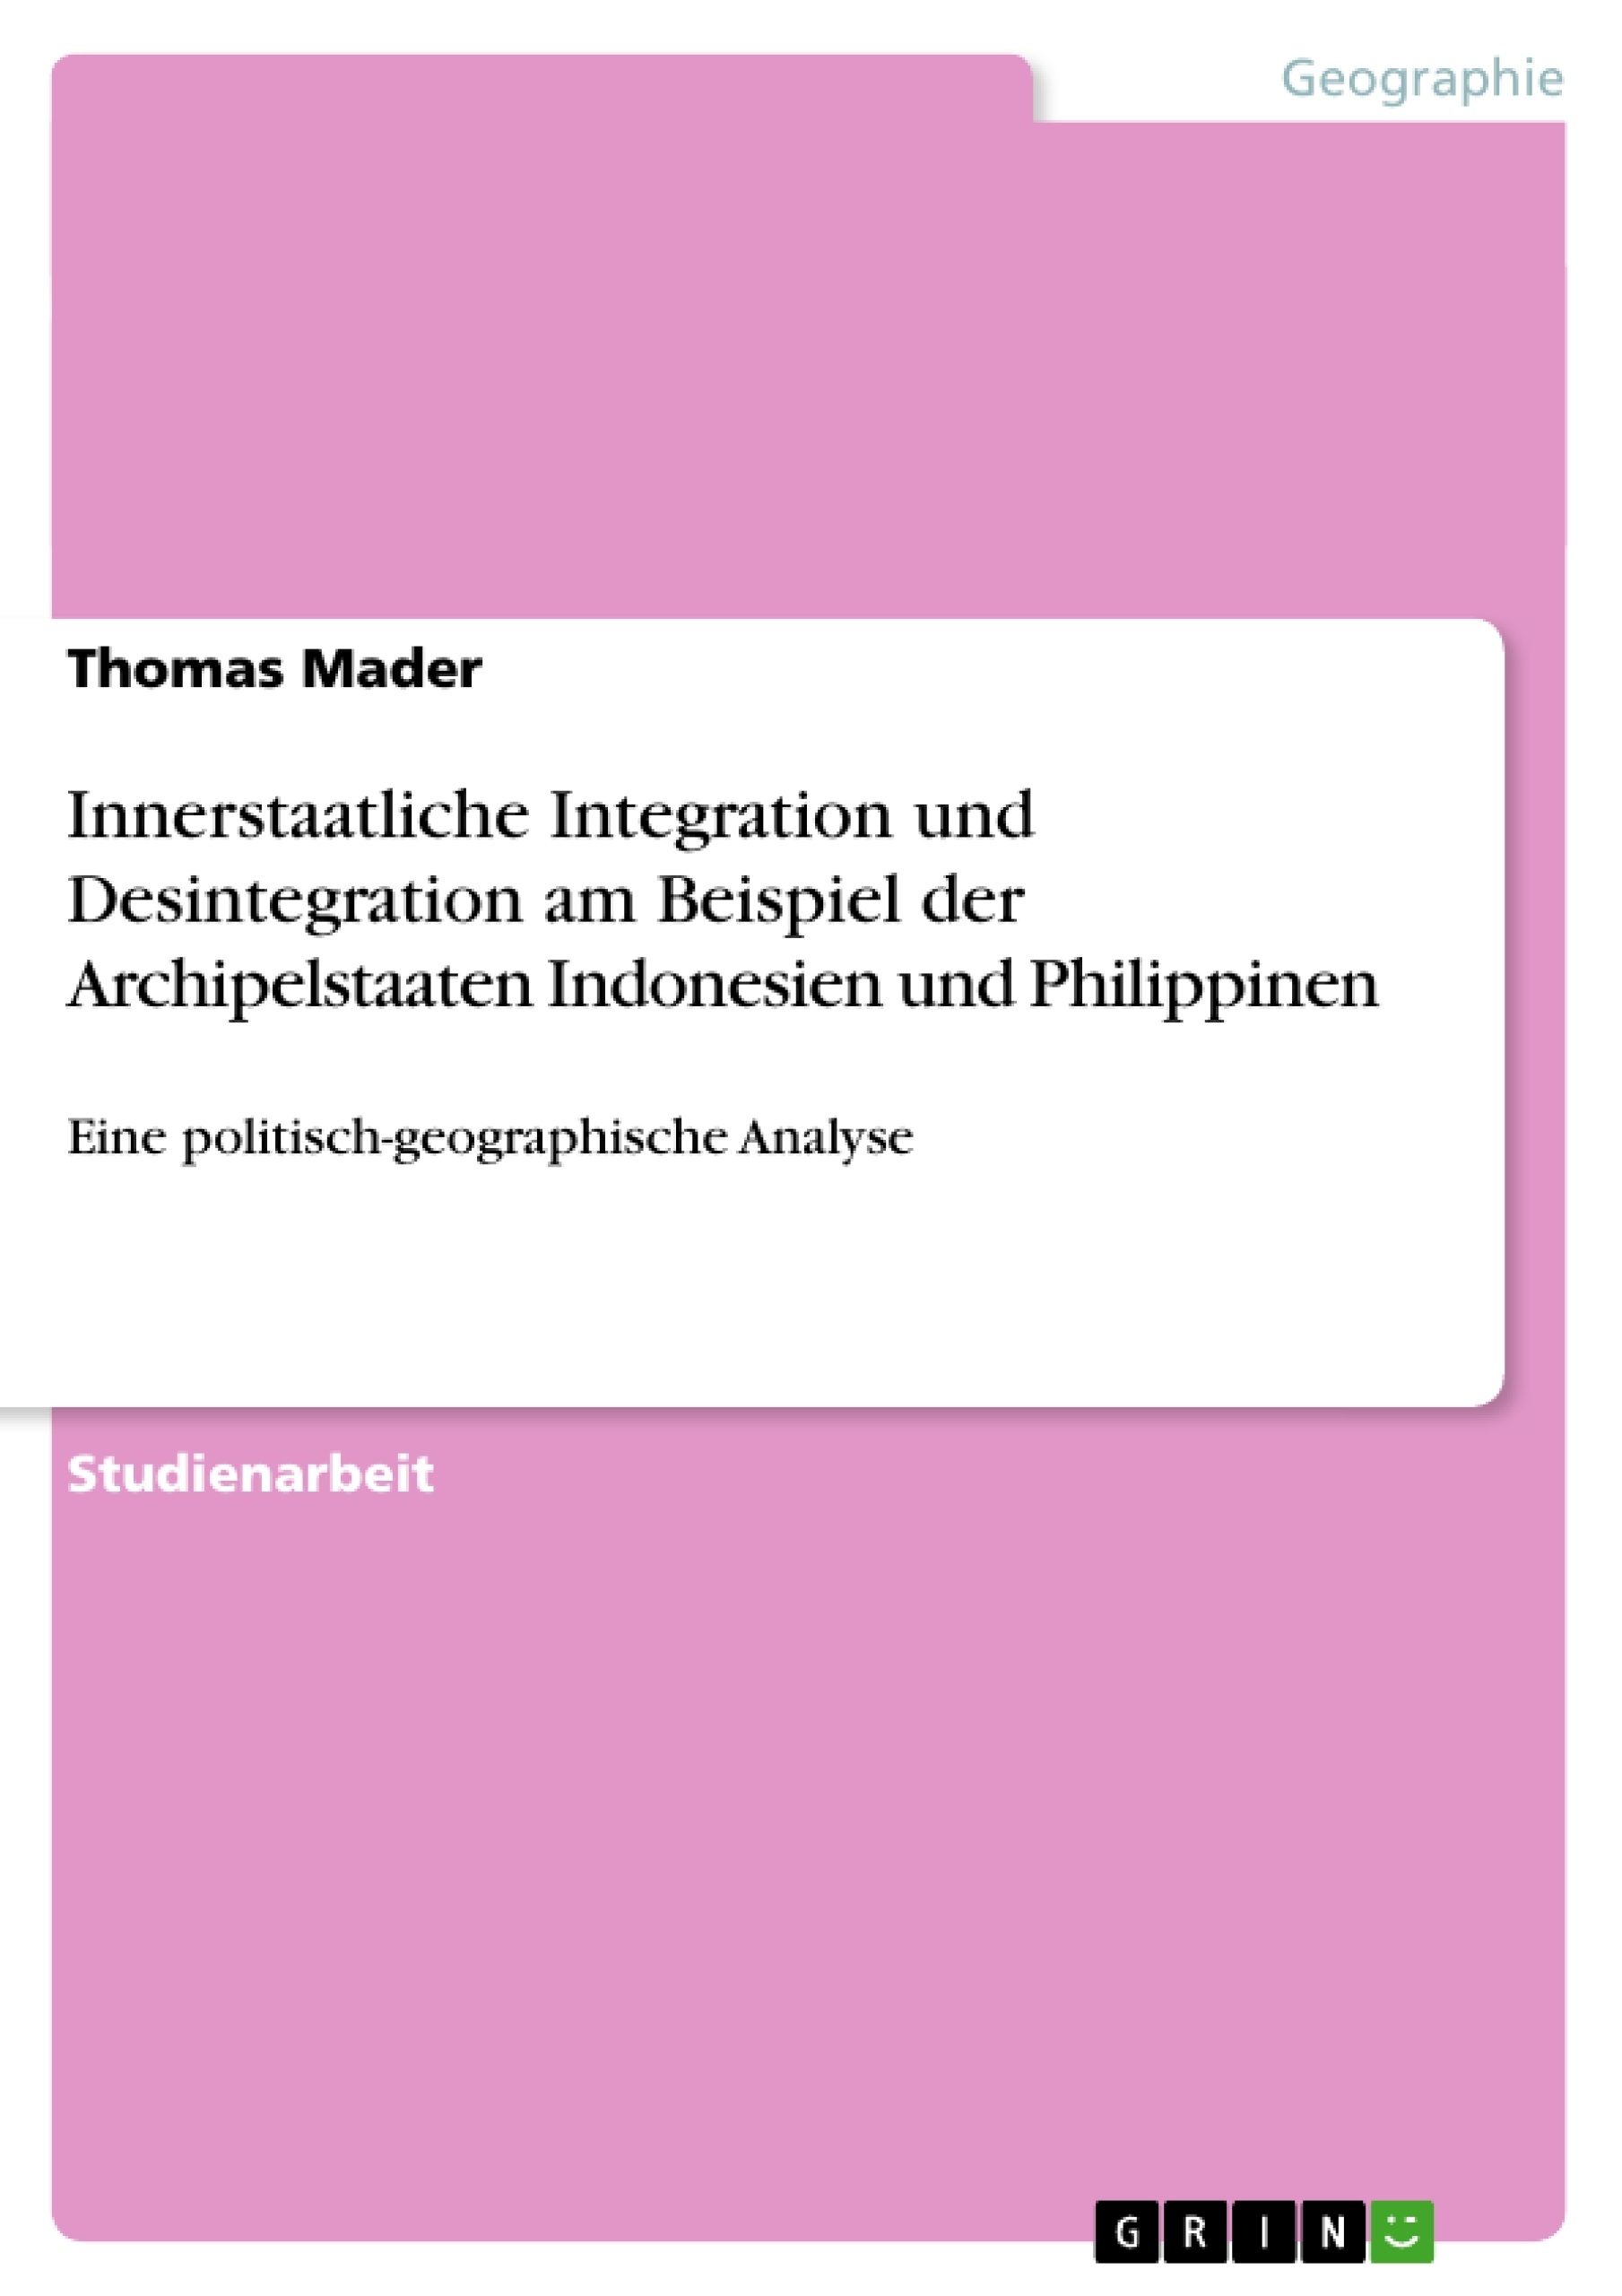 Título: Innerstaatliche Integration und Desintegration am Beispiel der Archipelstaaten Indonesien und Philippinen